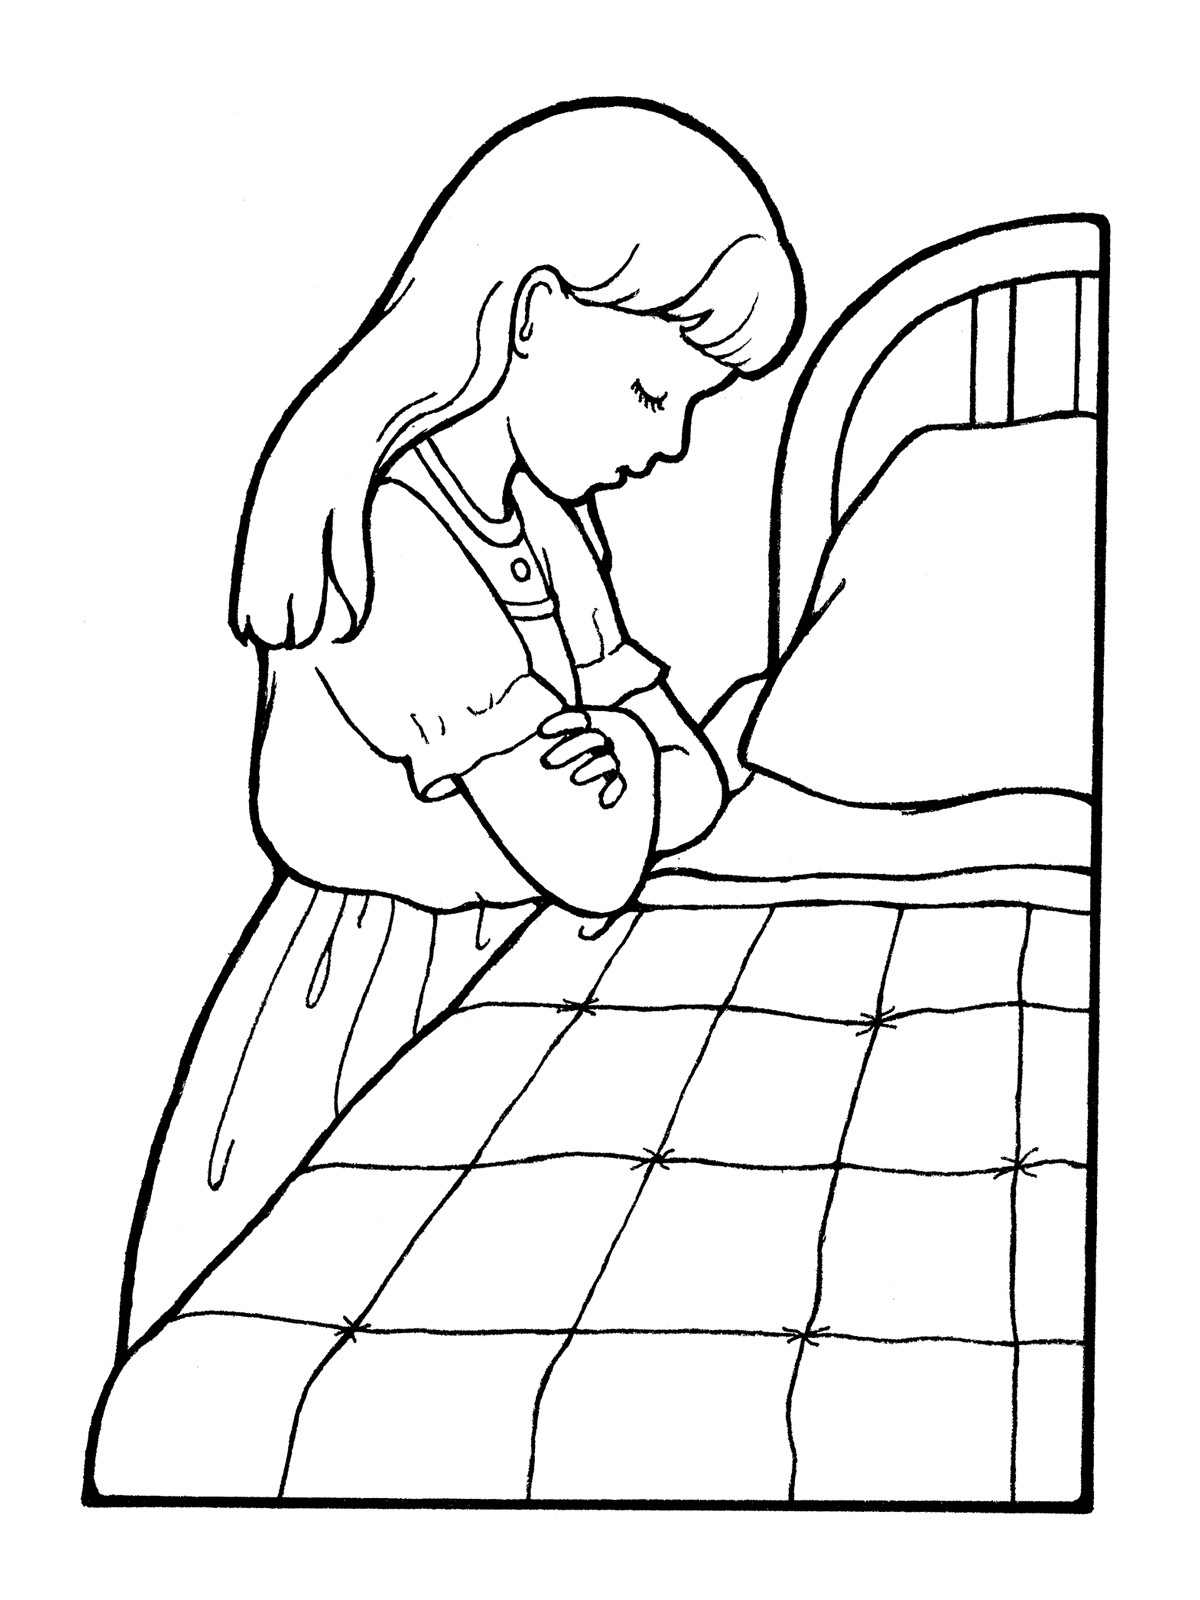 Child Praying Coloring Page
 Girl Praying at Her Bedside